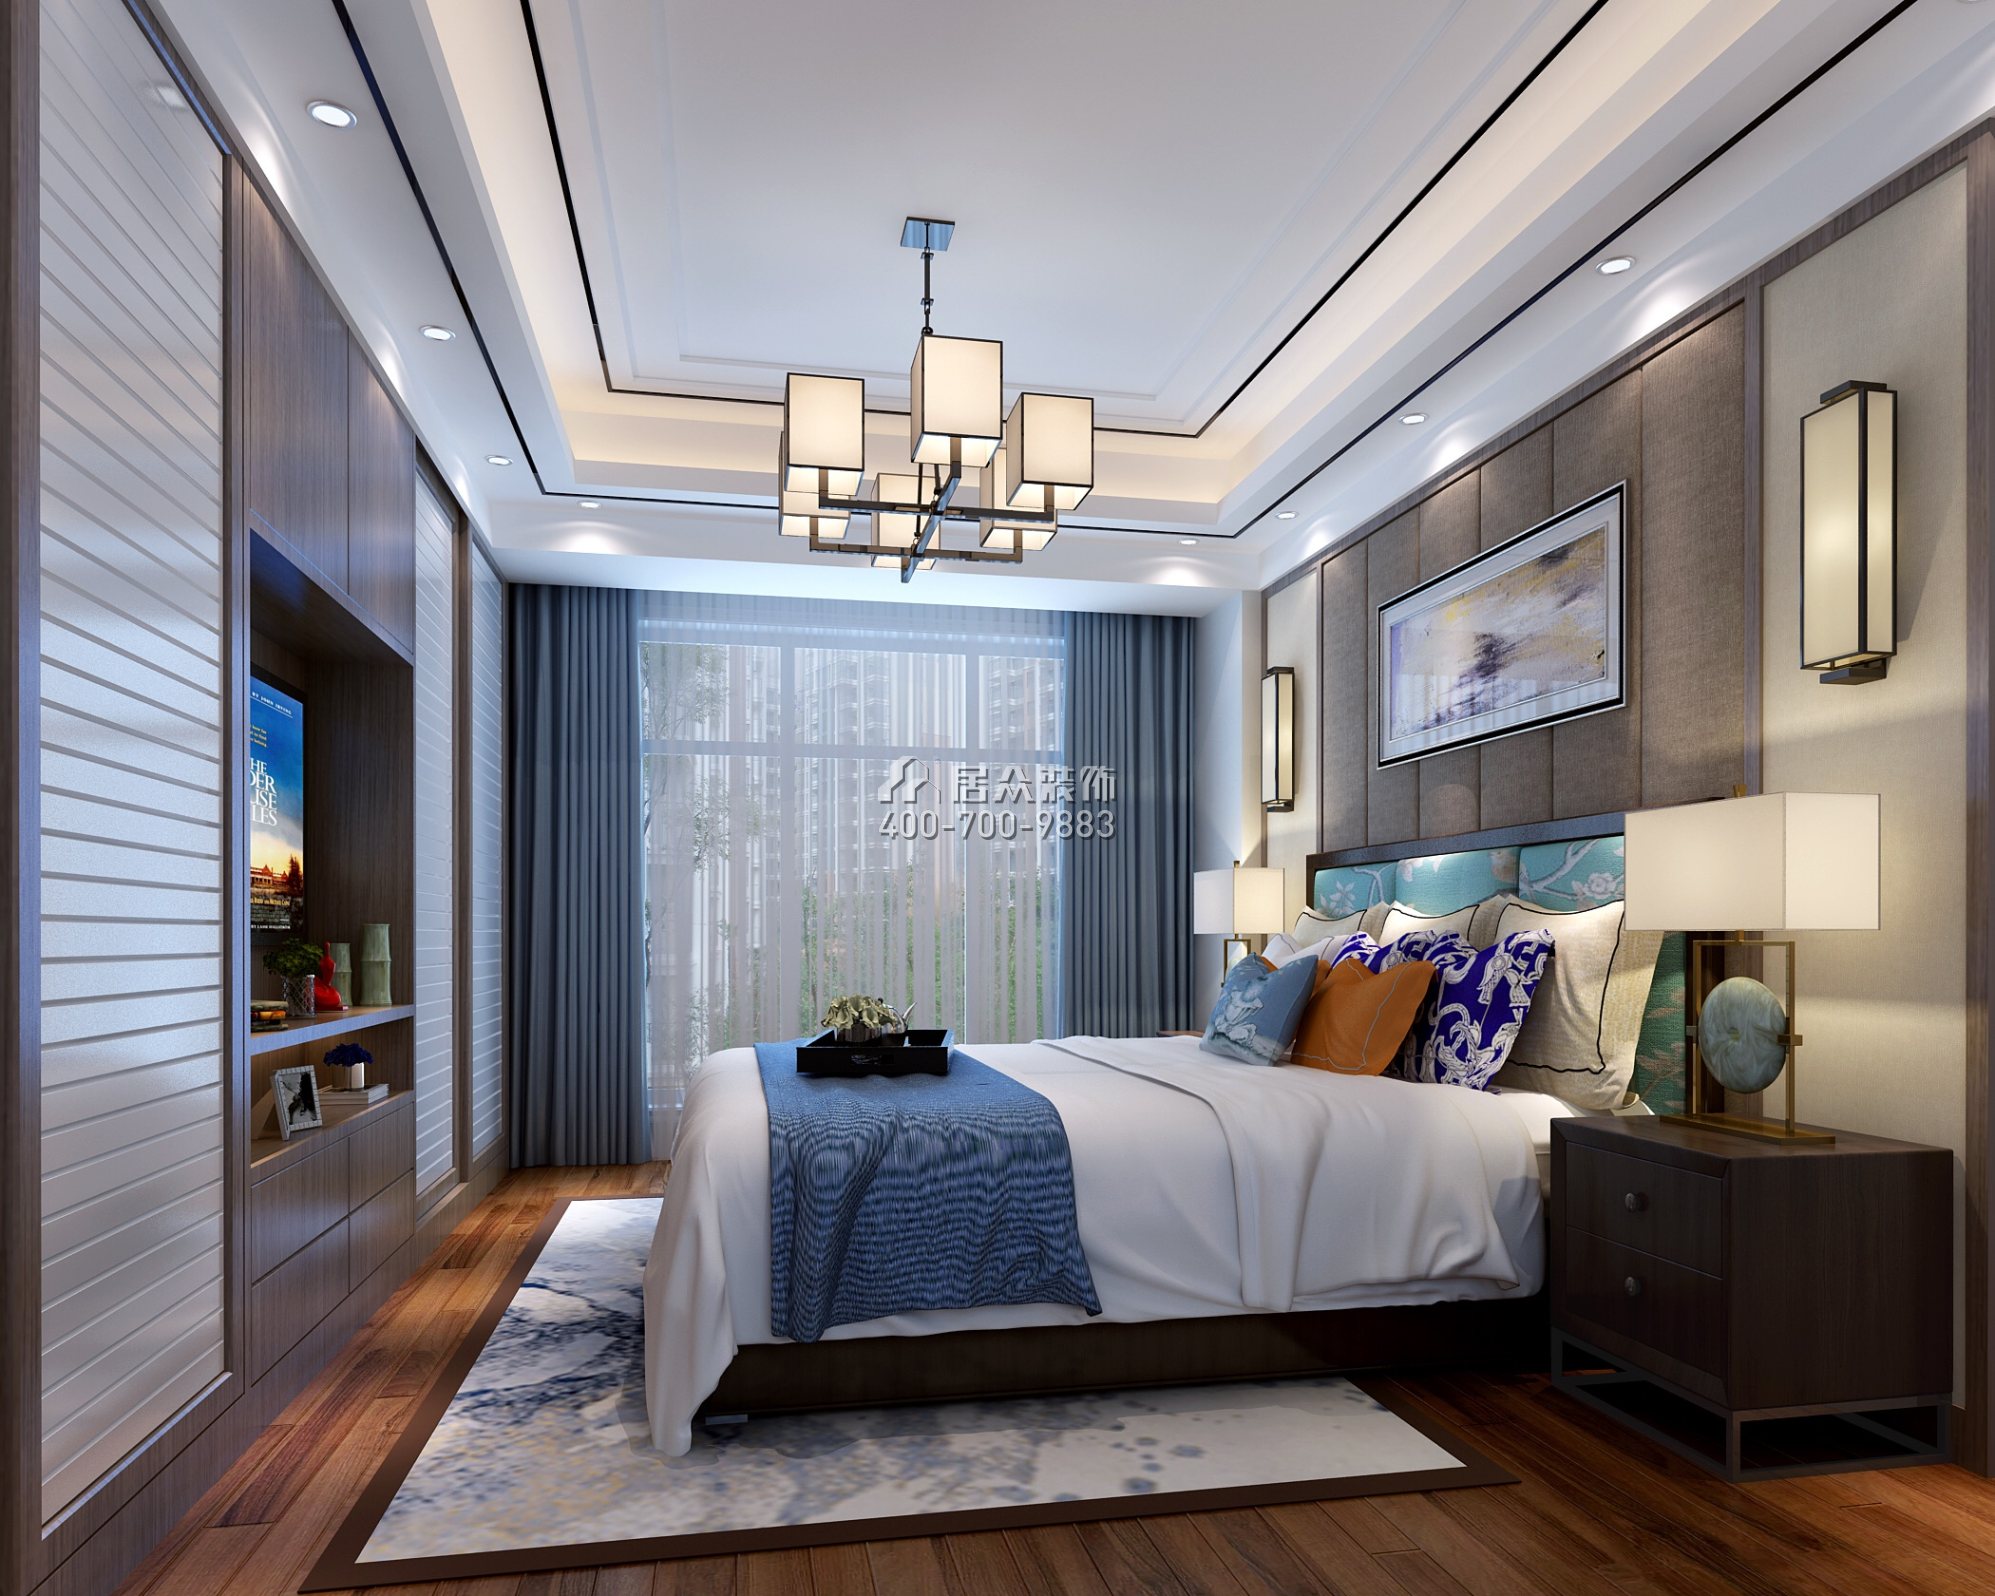 联投东方华府二期150平方米中式风格平层户型卧室装修效果图